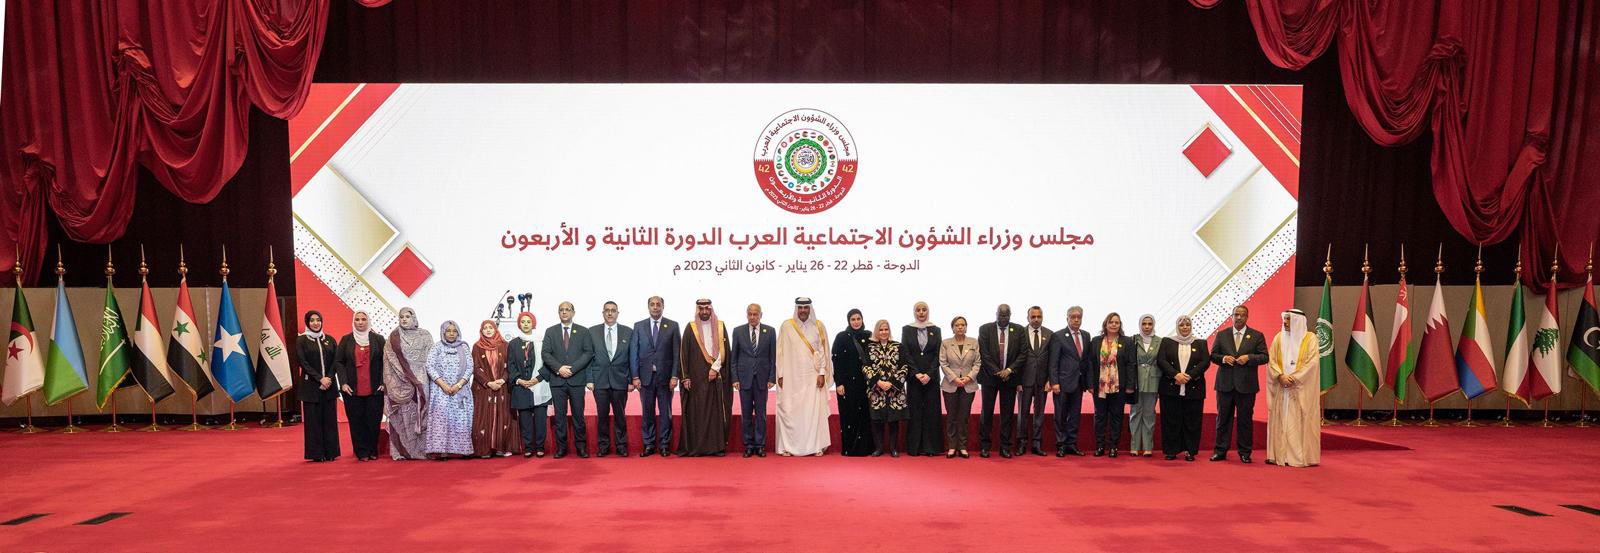 تونس تشارك في أشغال مجلس وزراء الشؤون الاجتماعية العرب  بقطر